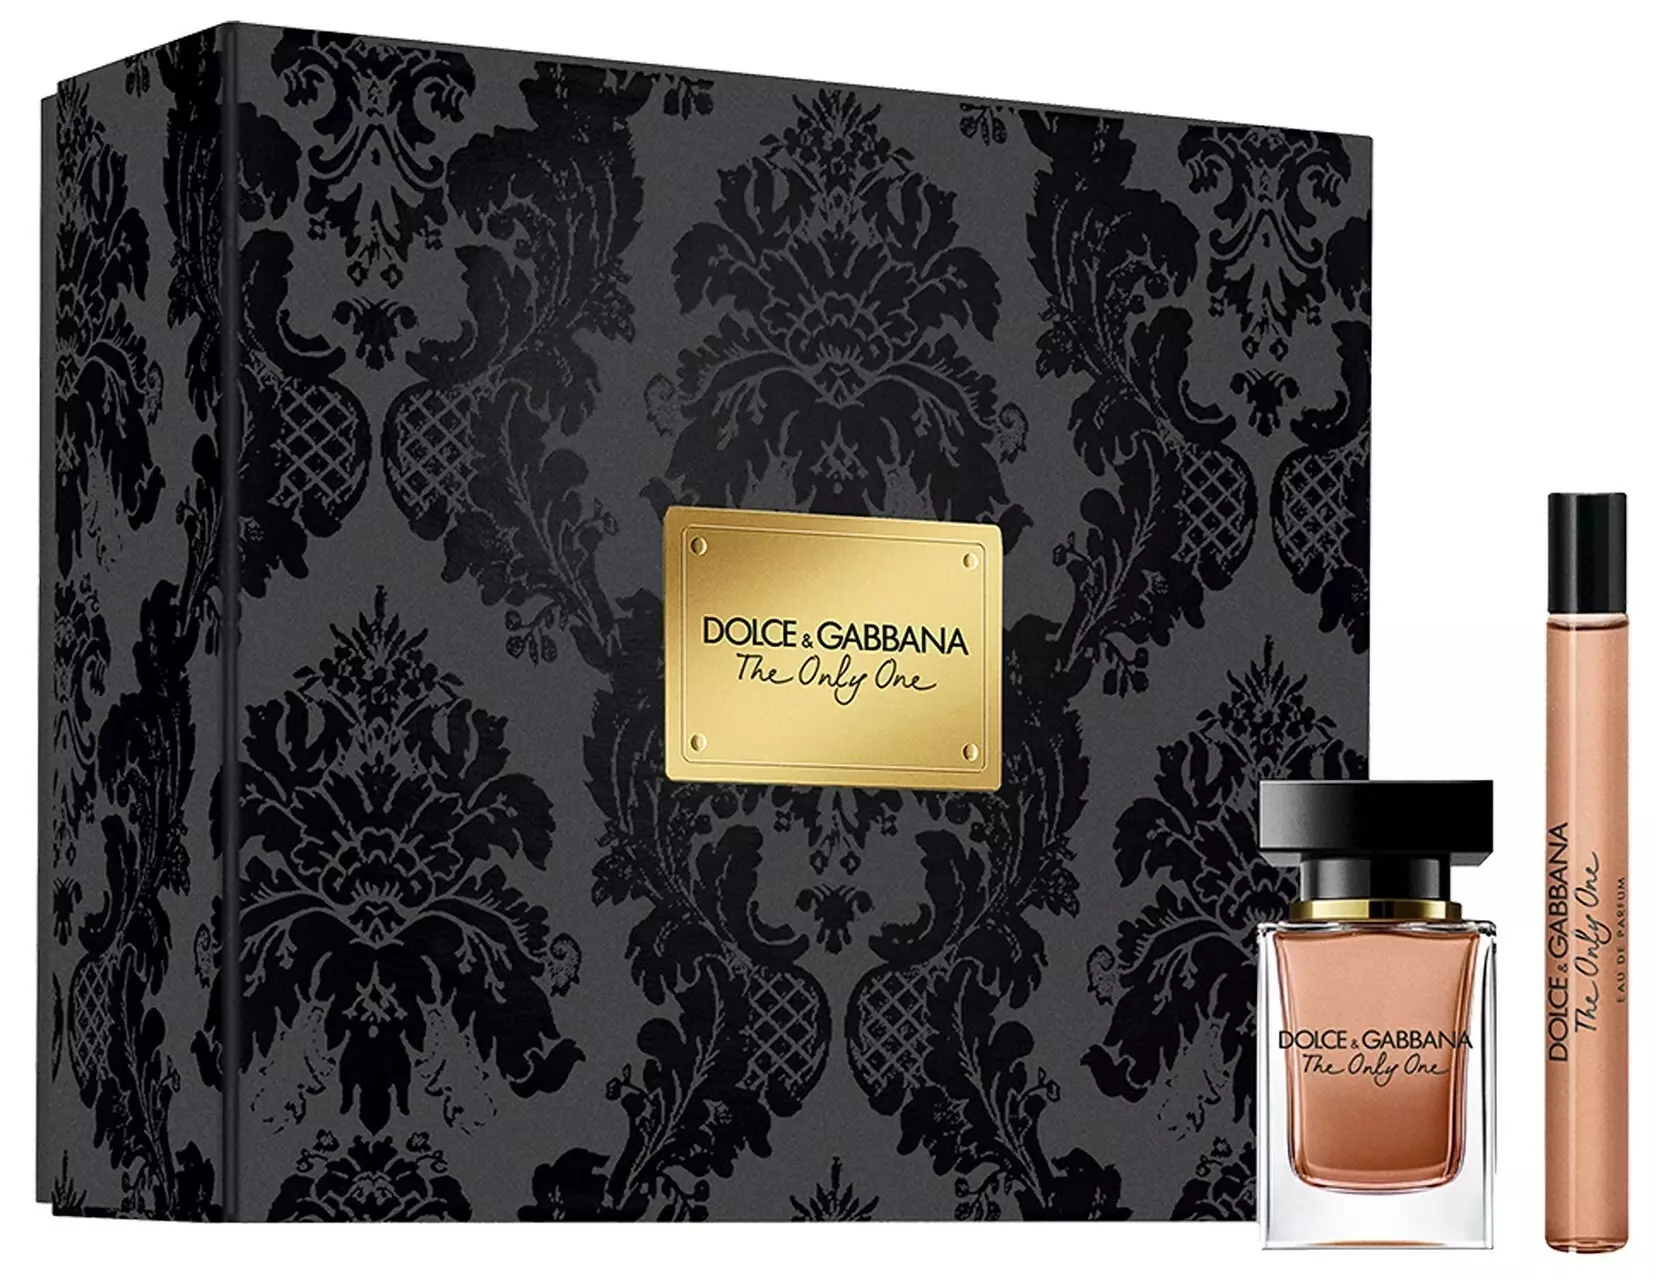 Дольче габбана онли отзывы. Dolce & Gabbana the only one, EDP., 100 ml. Dolce & Gabbana - the only one 7.5 мл. Dolce Gabbana the only one 50ml. Dolce Gabbana the only one 30 мл.